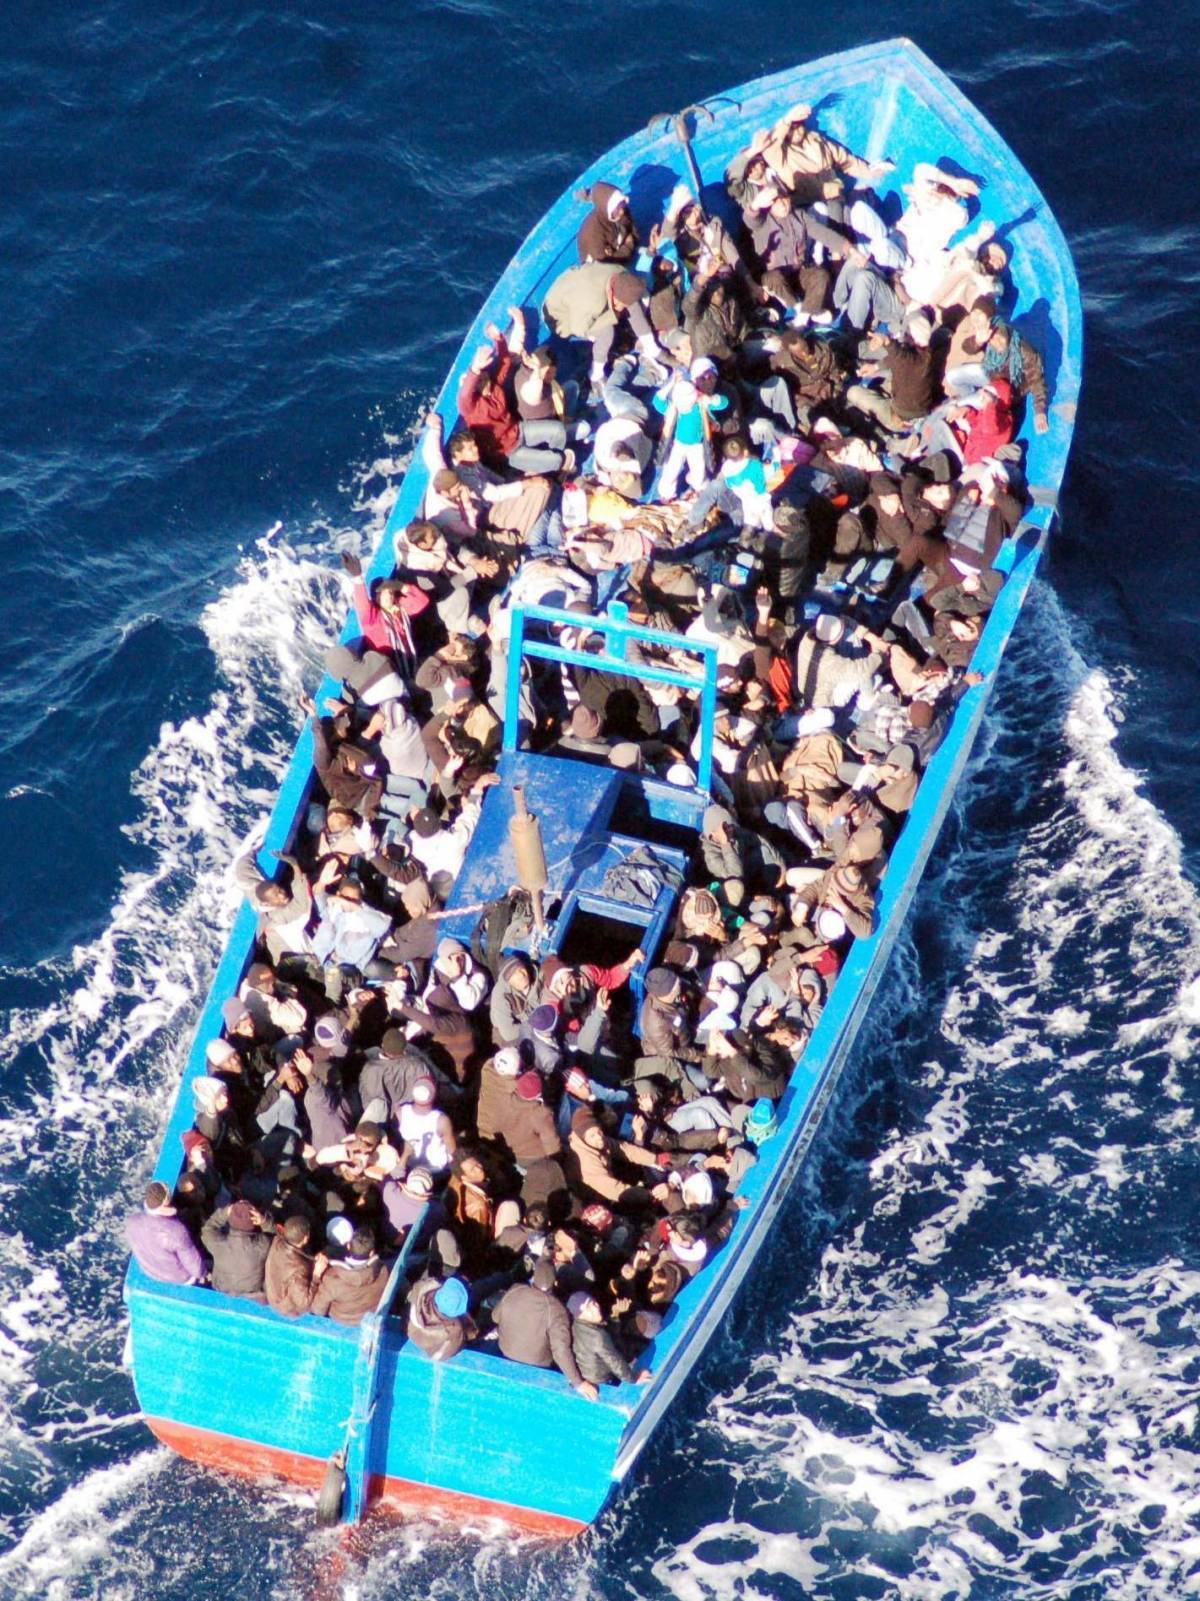 Strage annunciata: barcone si rovescia, morti 700 migranti. Mai un simile orrore nel Mediterraneo